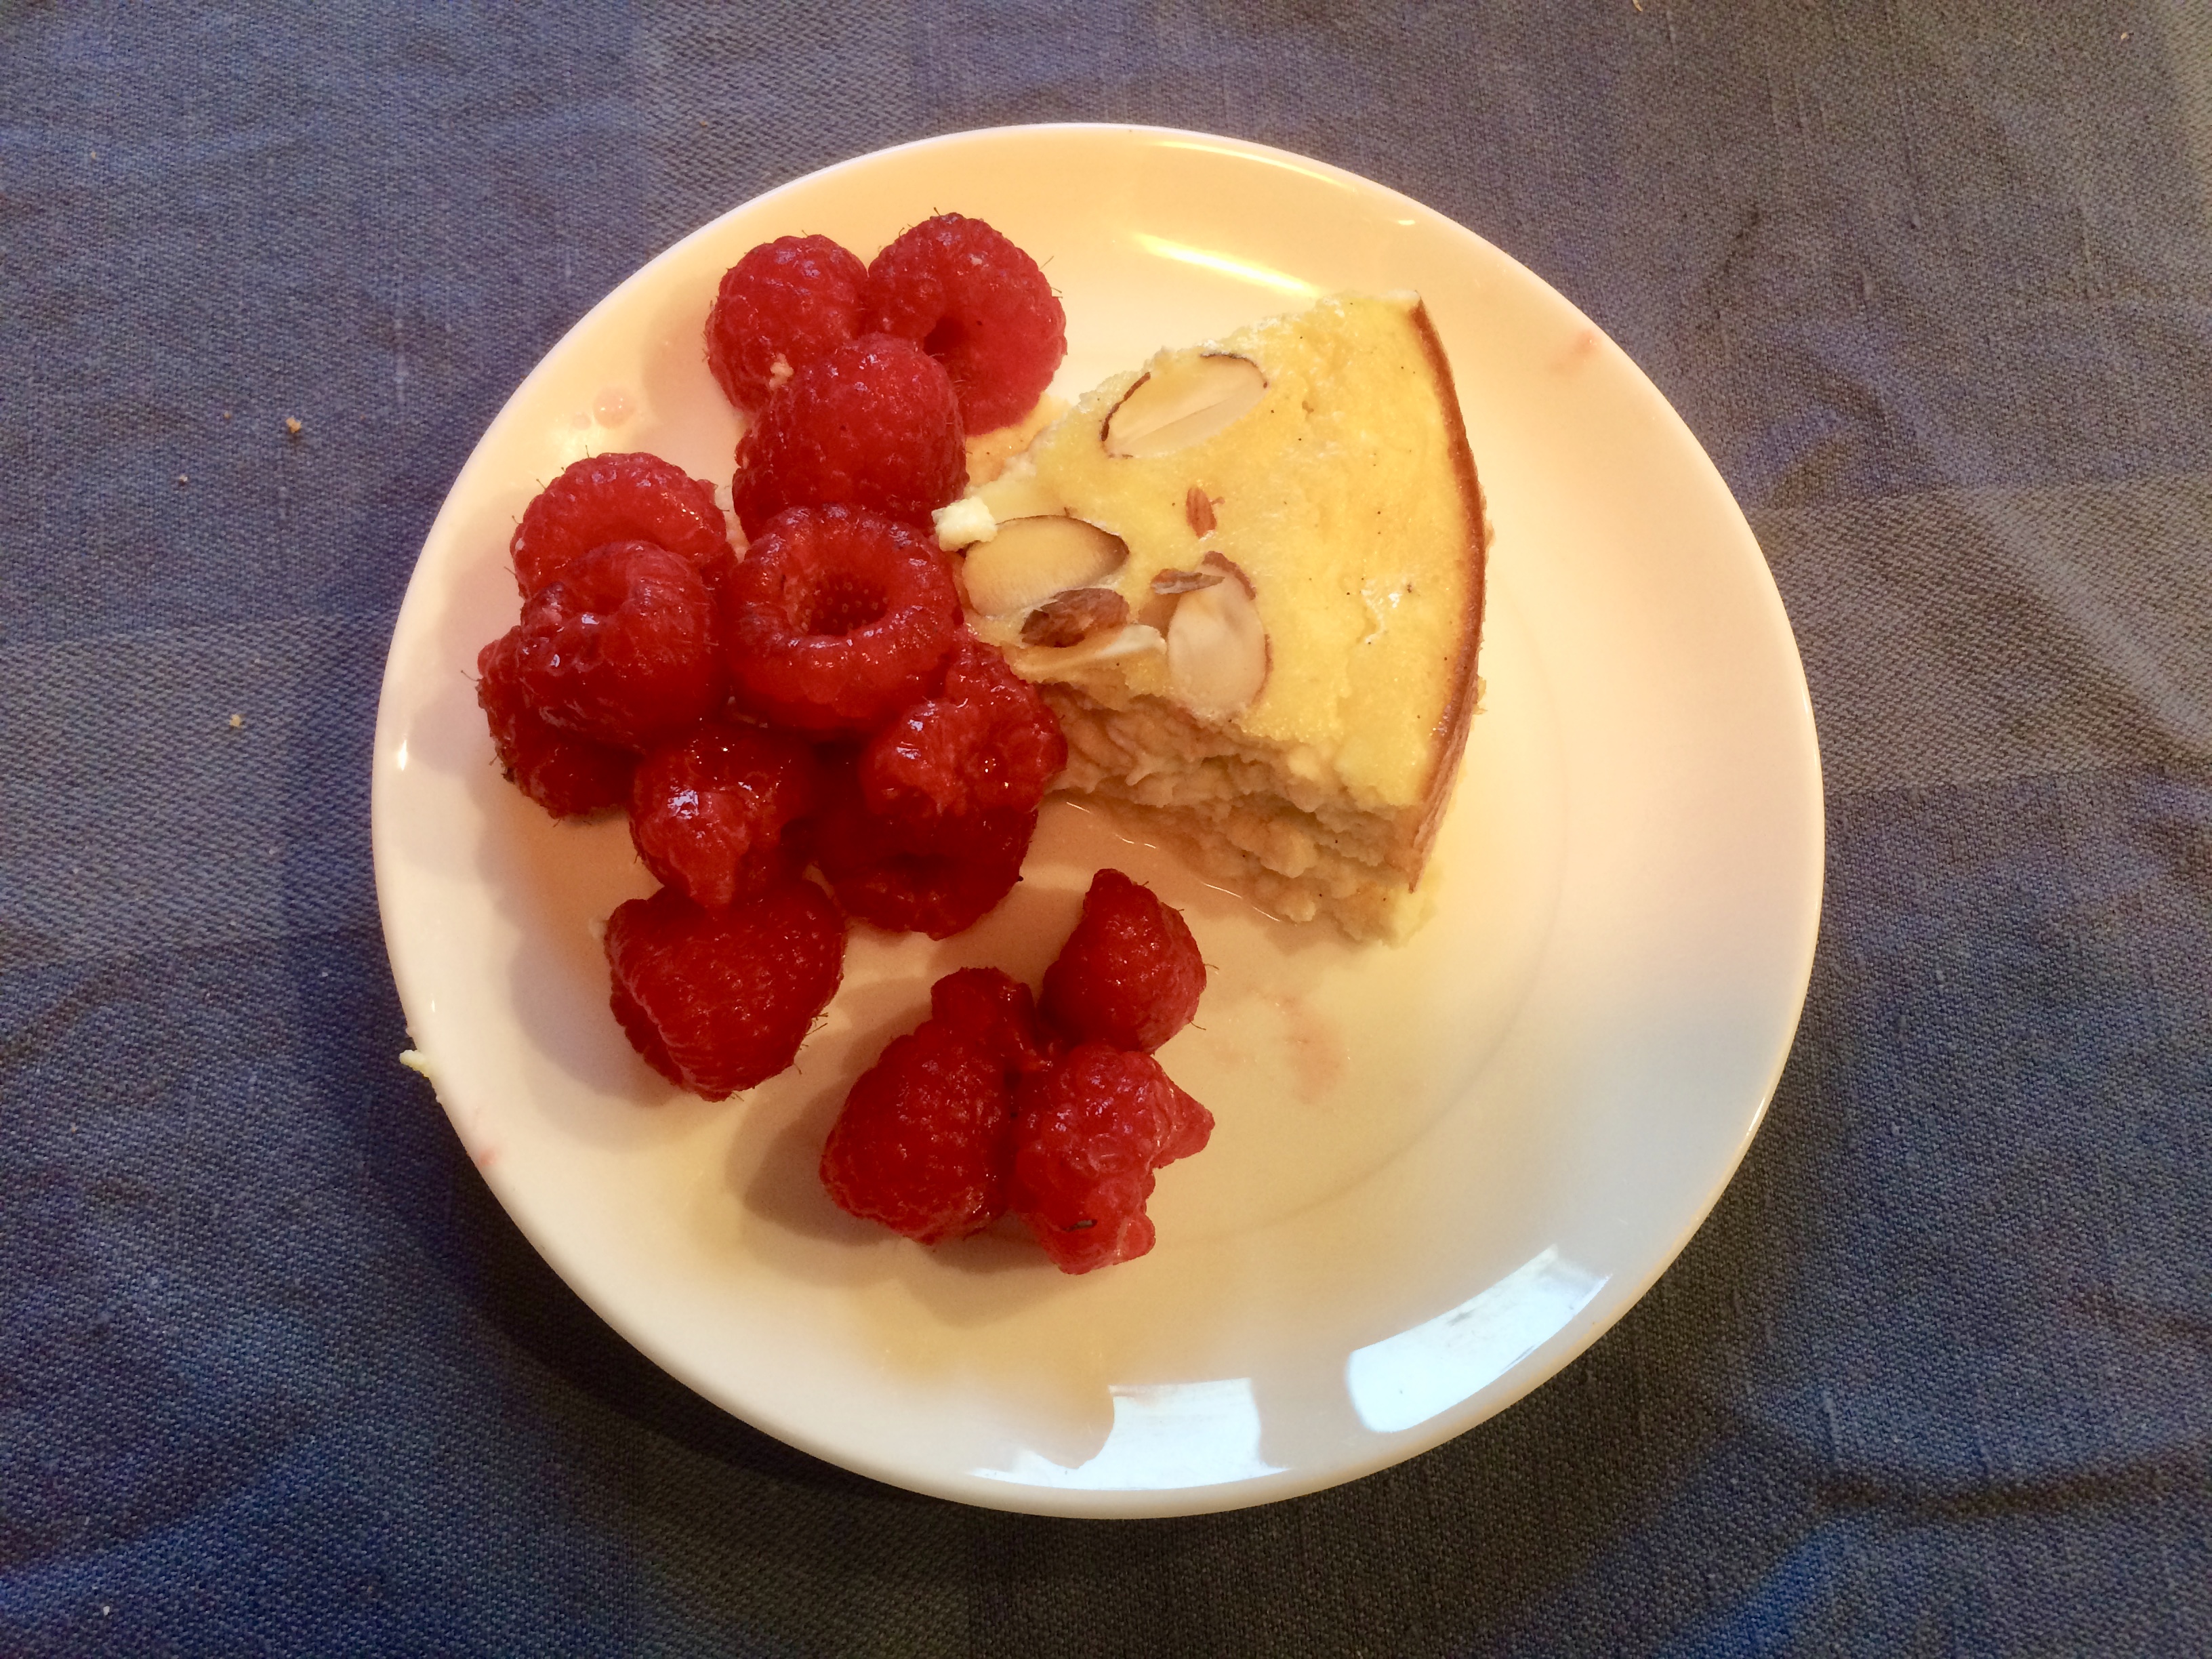 Curd cake and raspberries